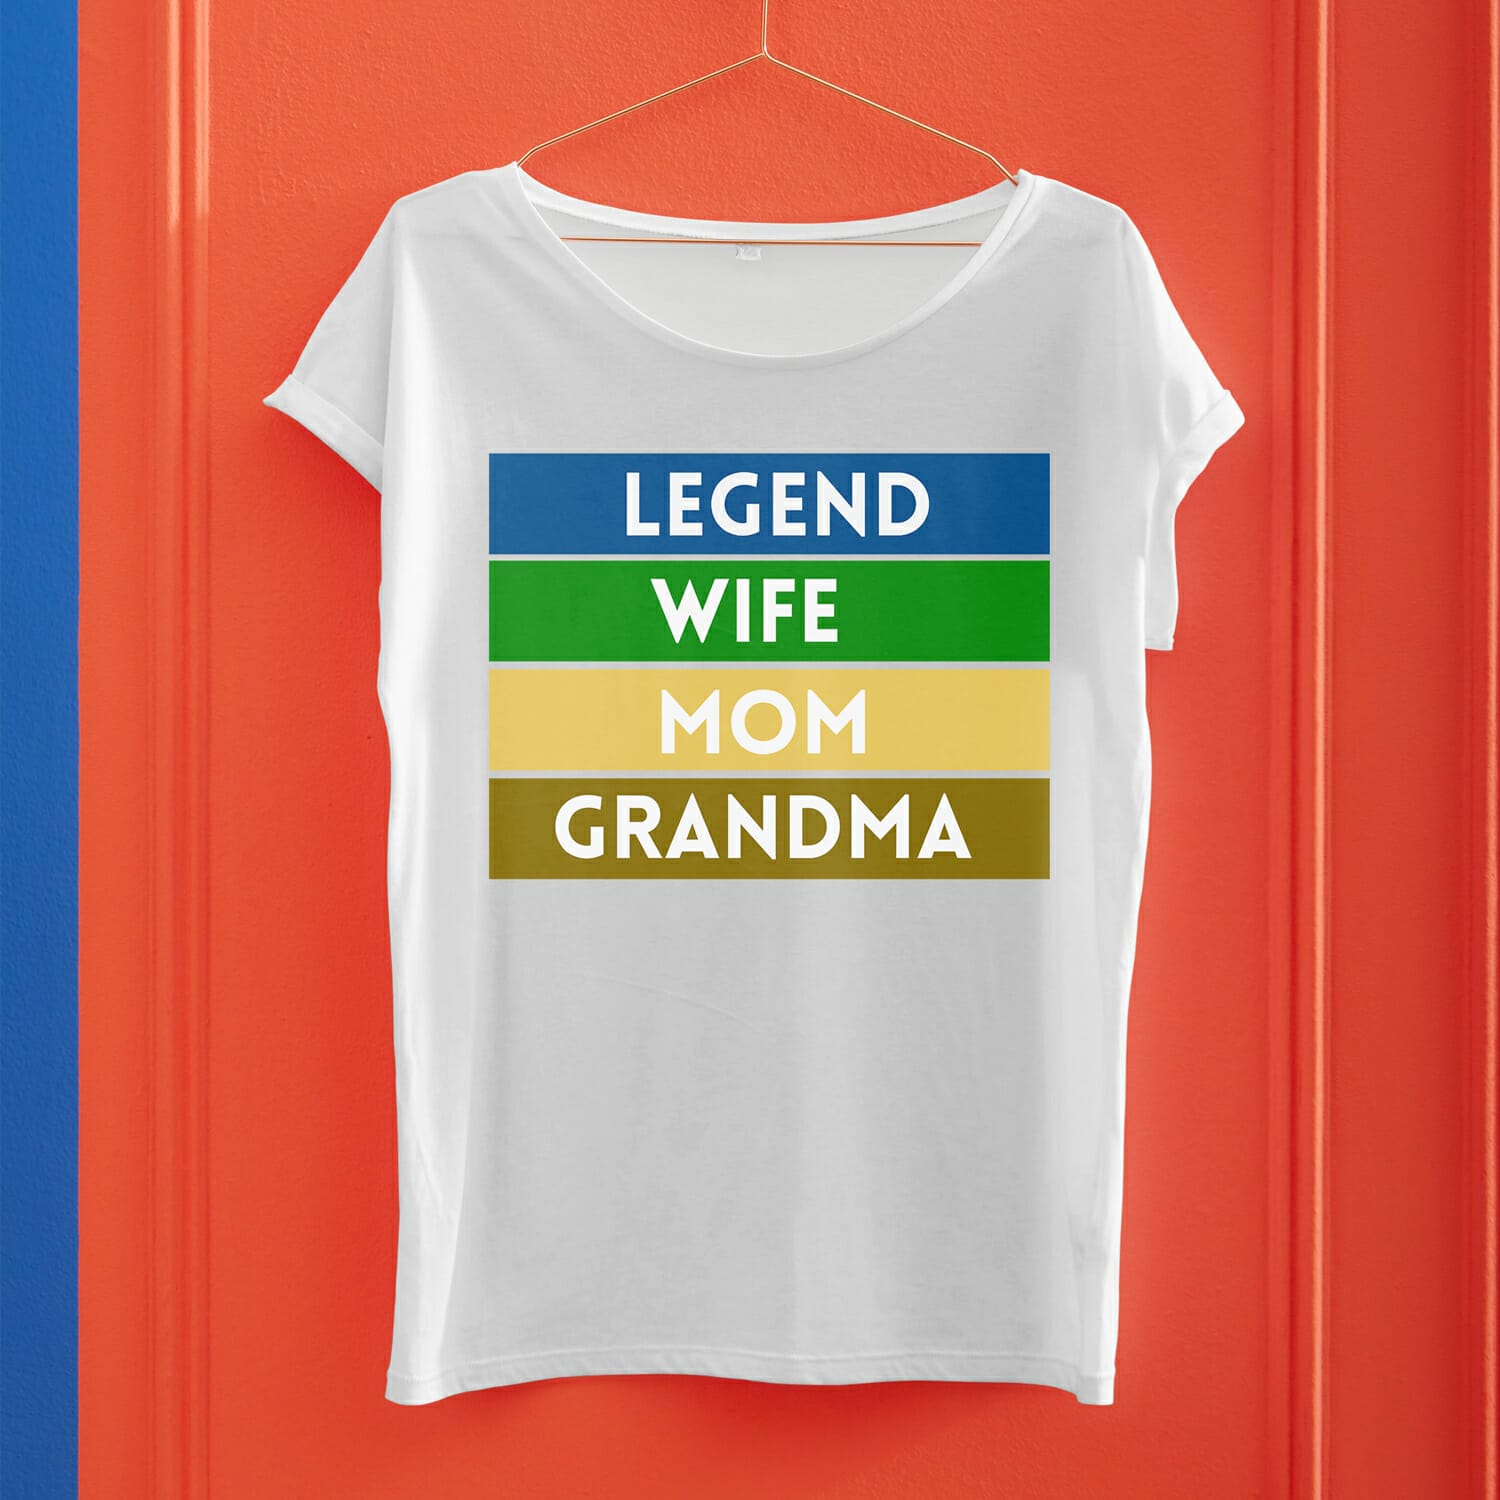 Legend, wife, Mom, Grandma vintage tshirt design